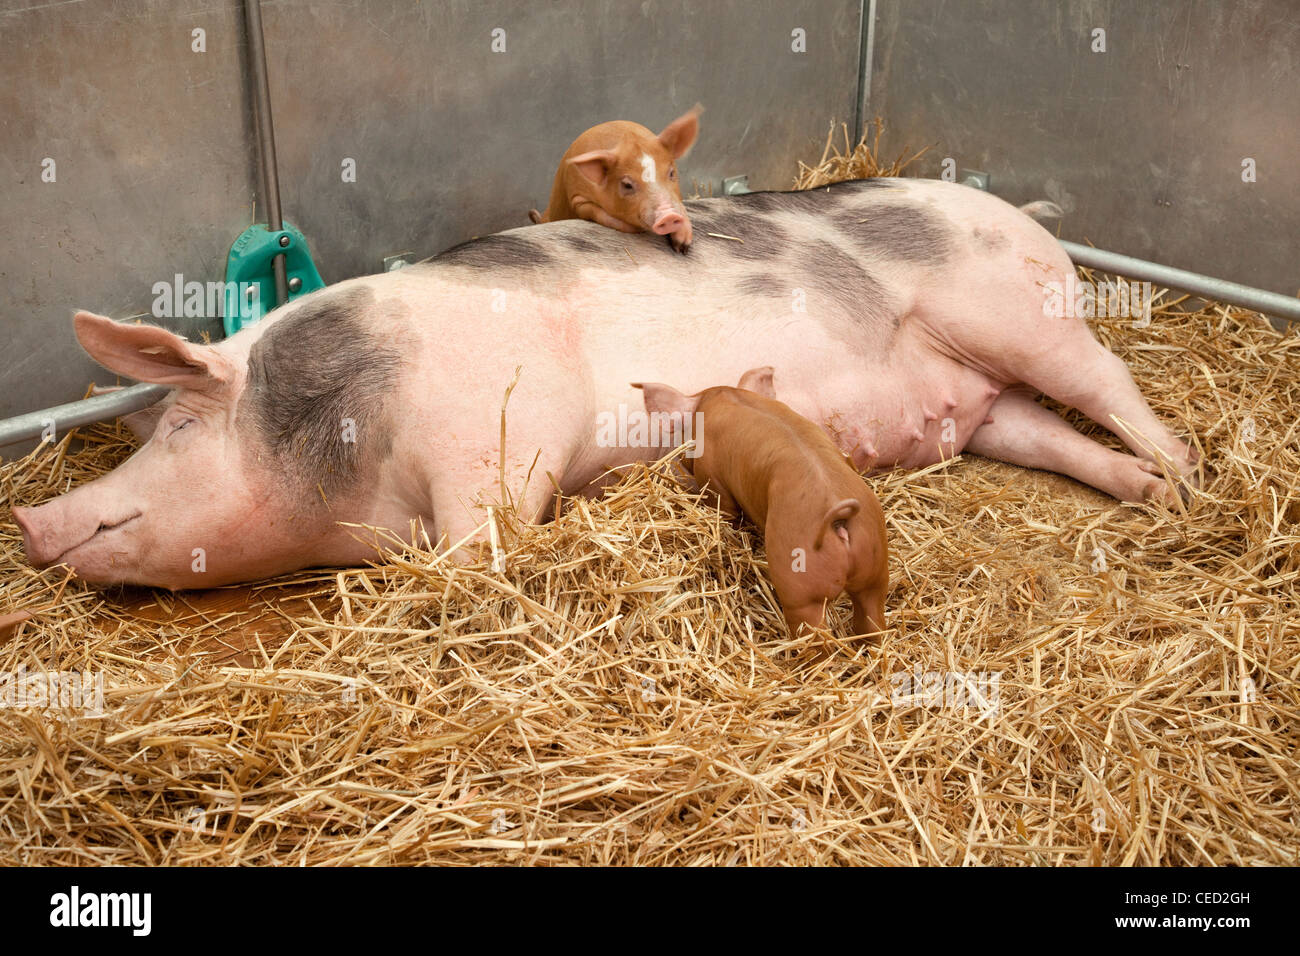 Sow with piglets - Weibliches Hausschwein mit Ferkeln im Stall Stock Photo